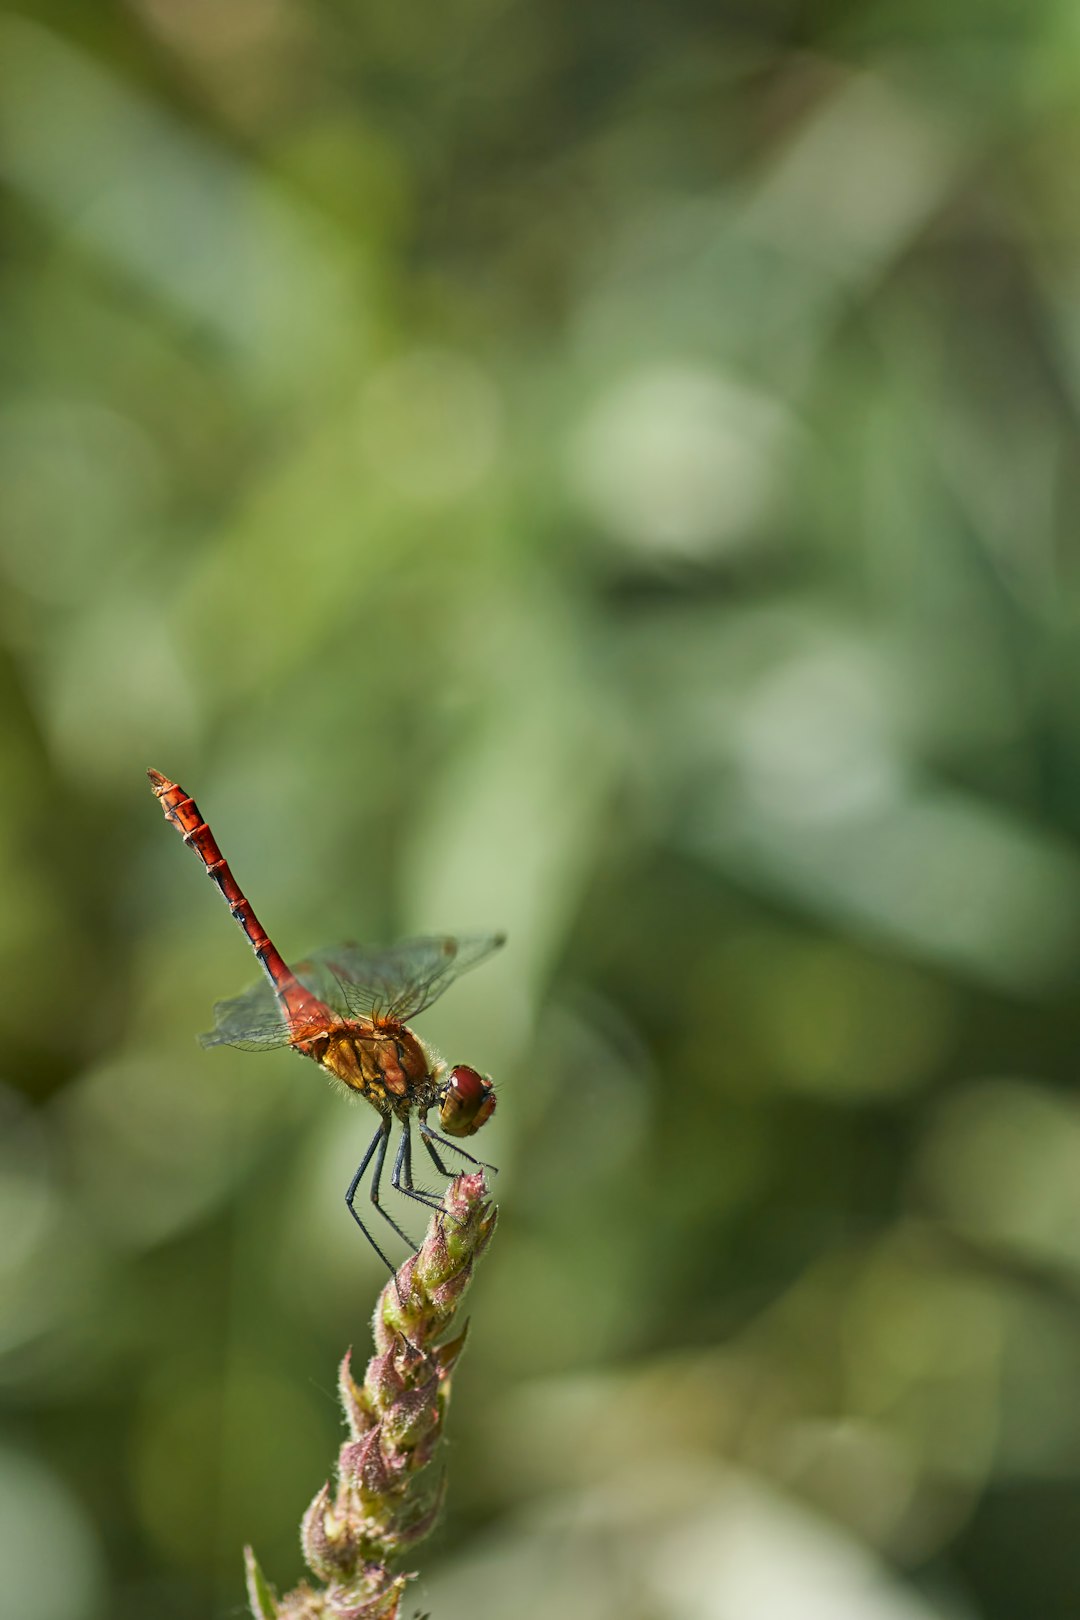 red dragonfly perched on brown stem in tilt shift lens